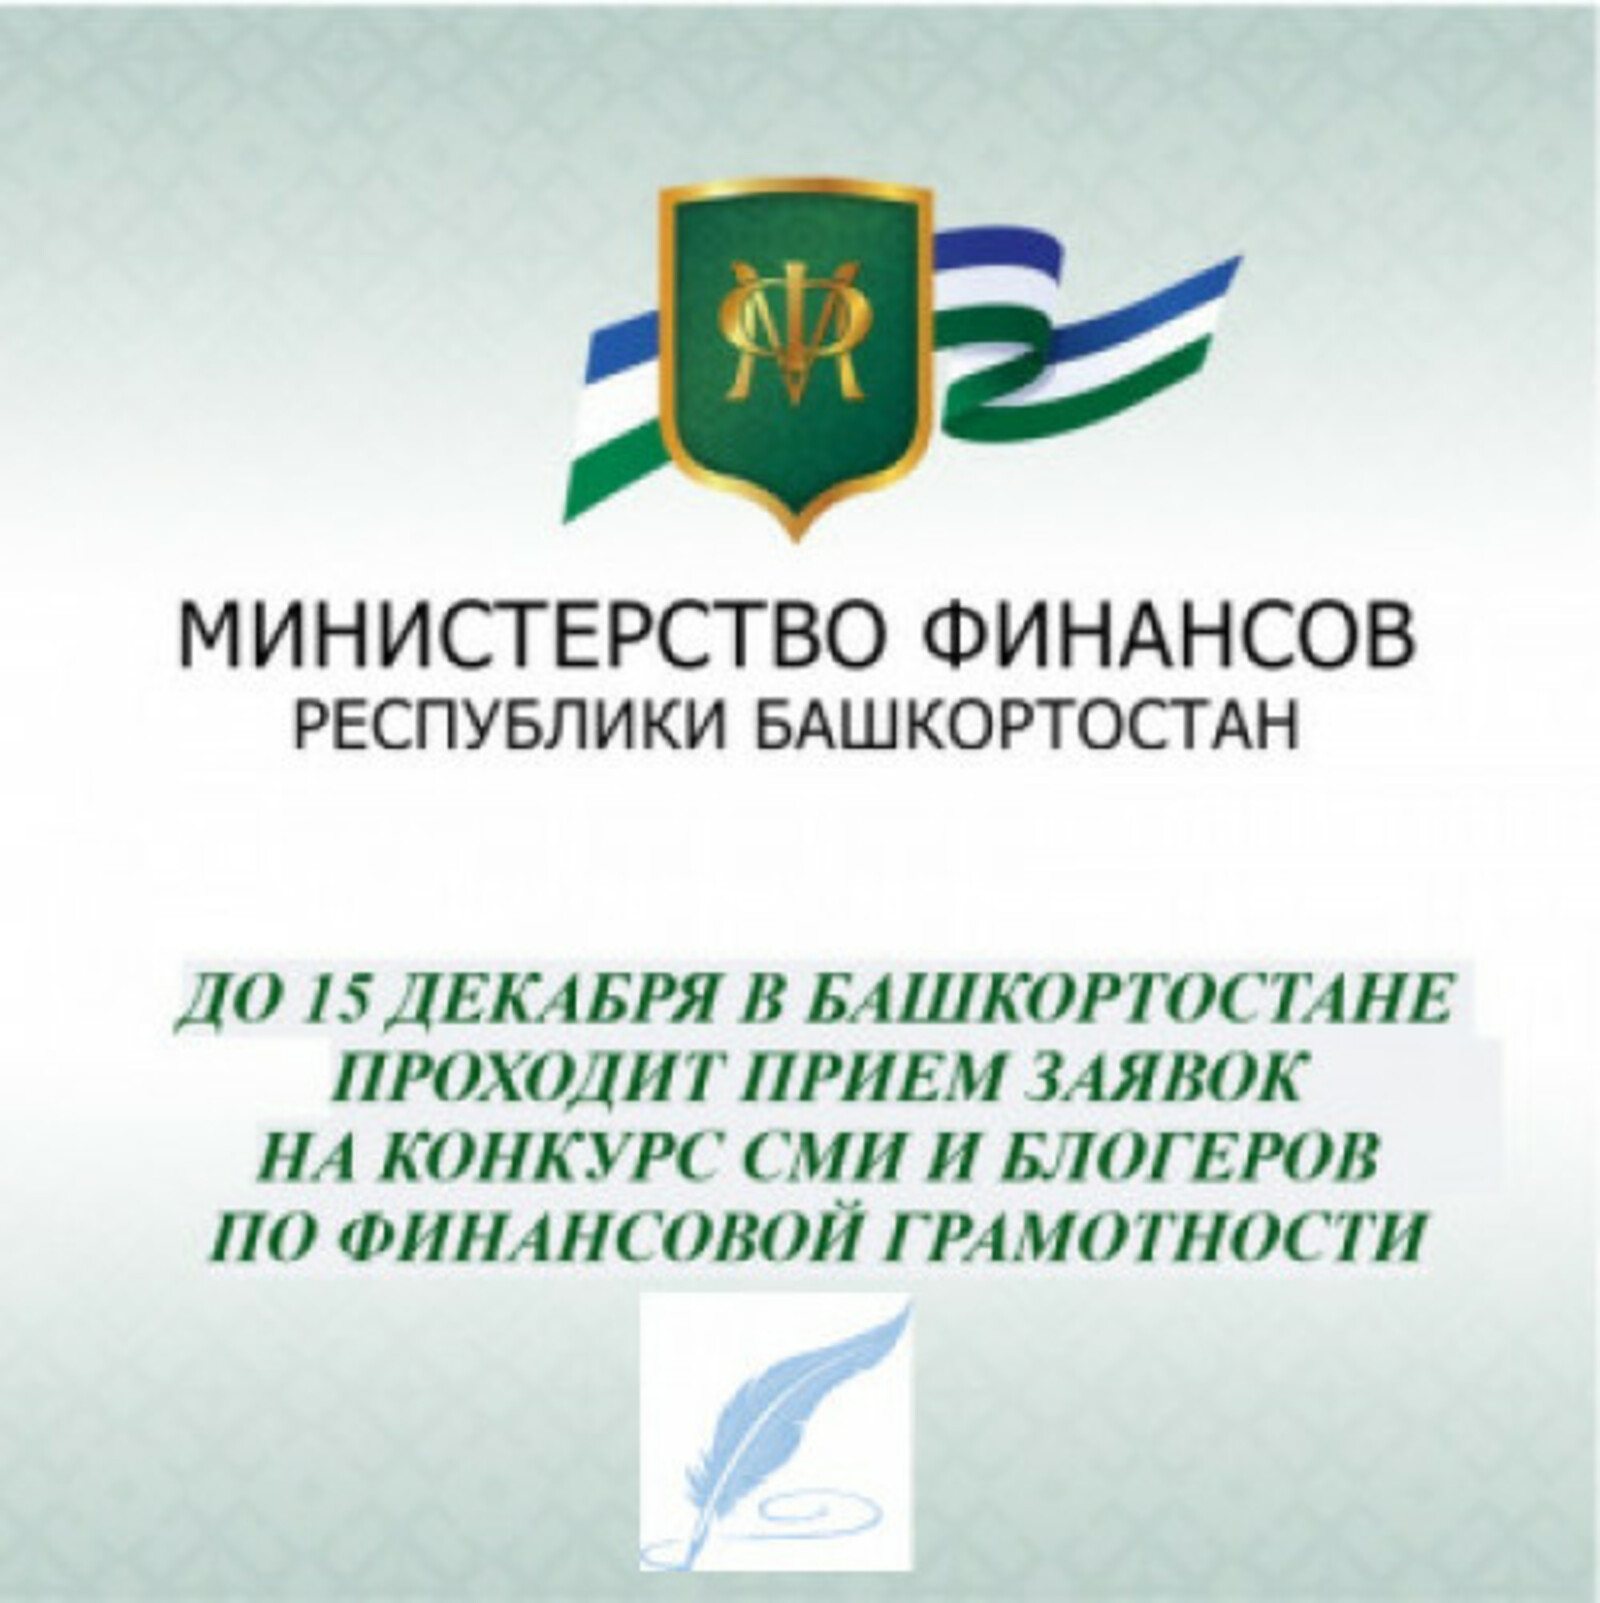 Прием заявок на конкурс СМИ и блогеров по финансовой грамотности проходит в Башкортостане до 15 декабря